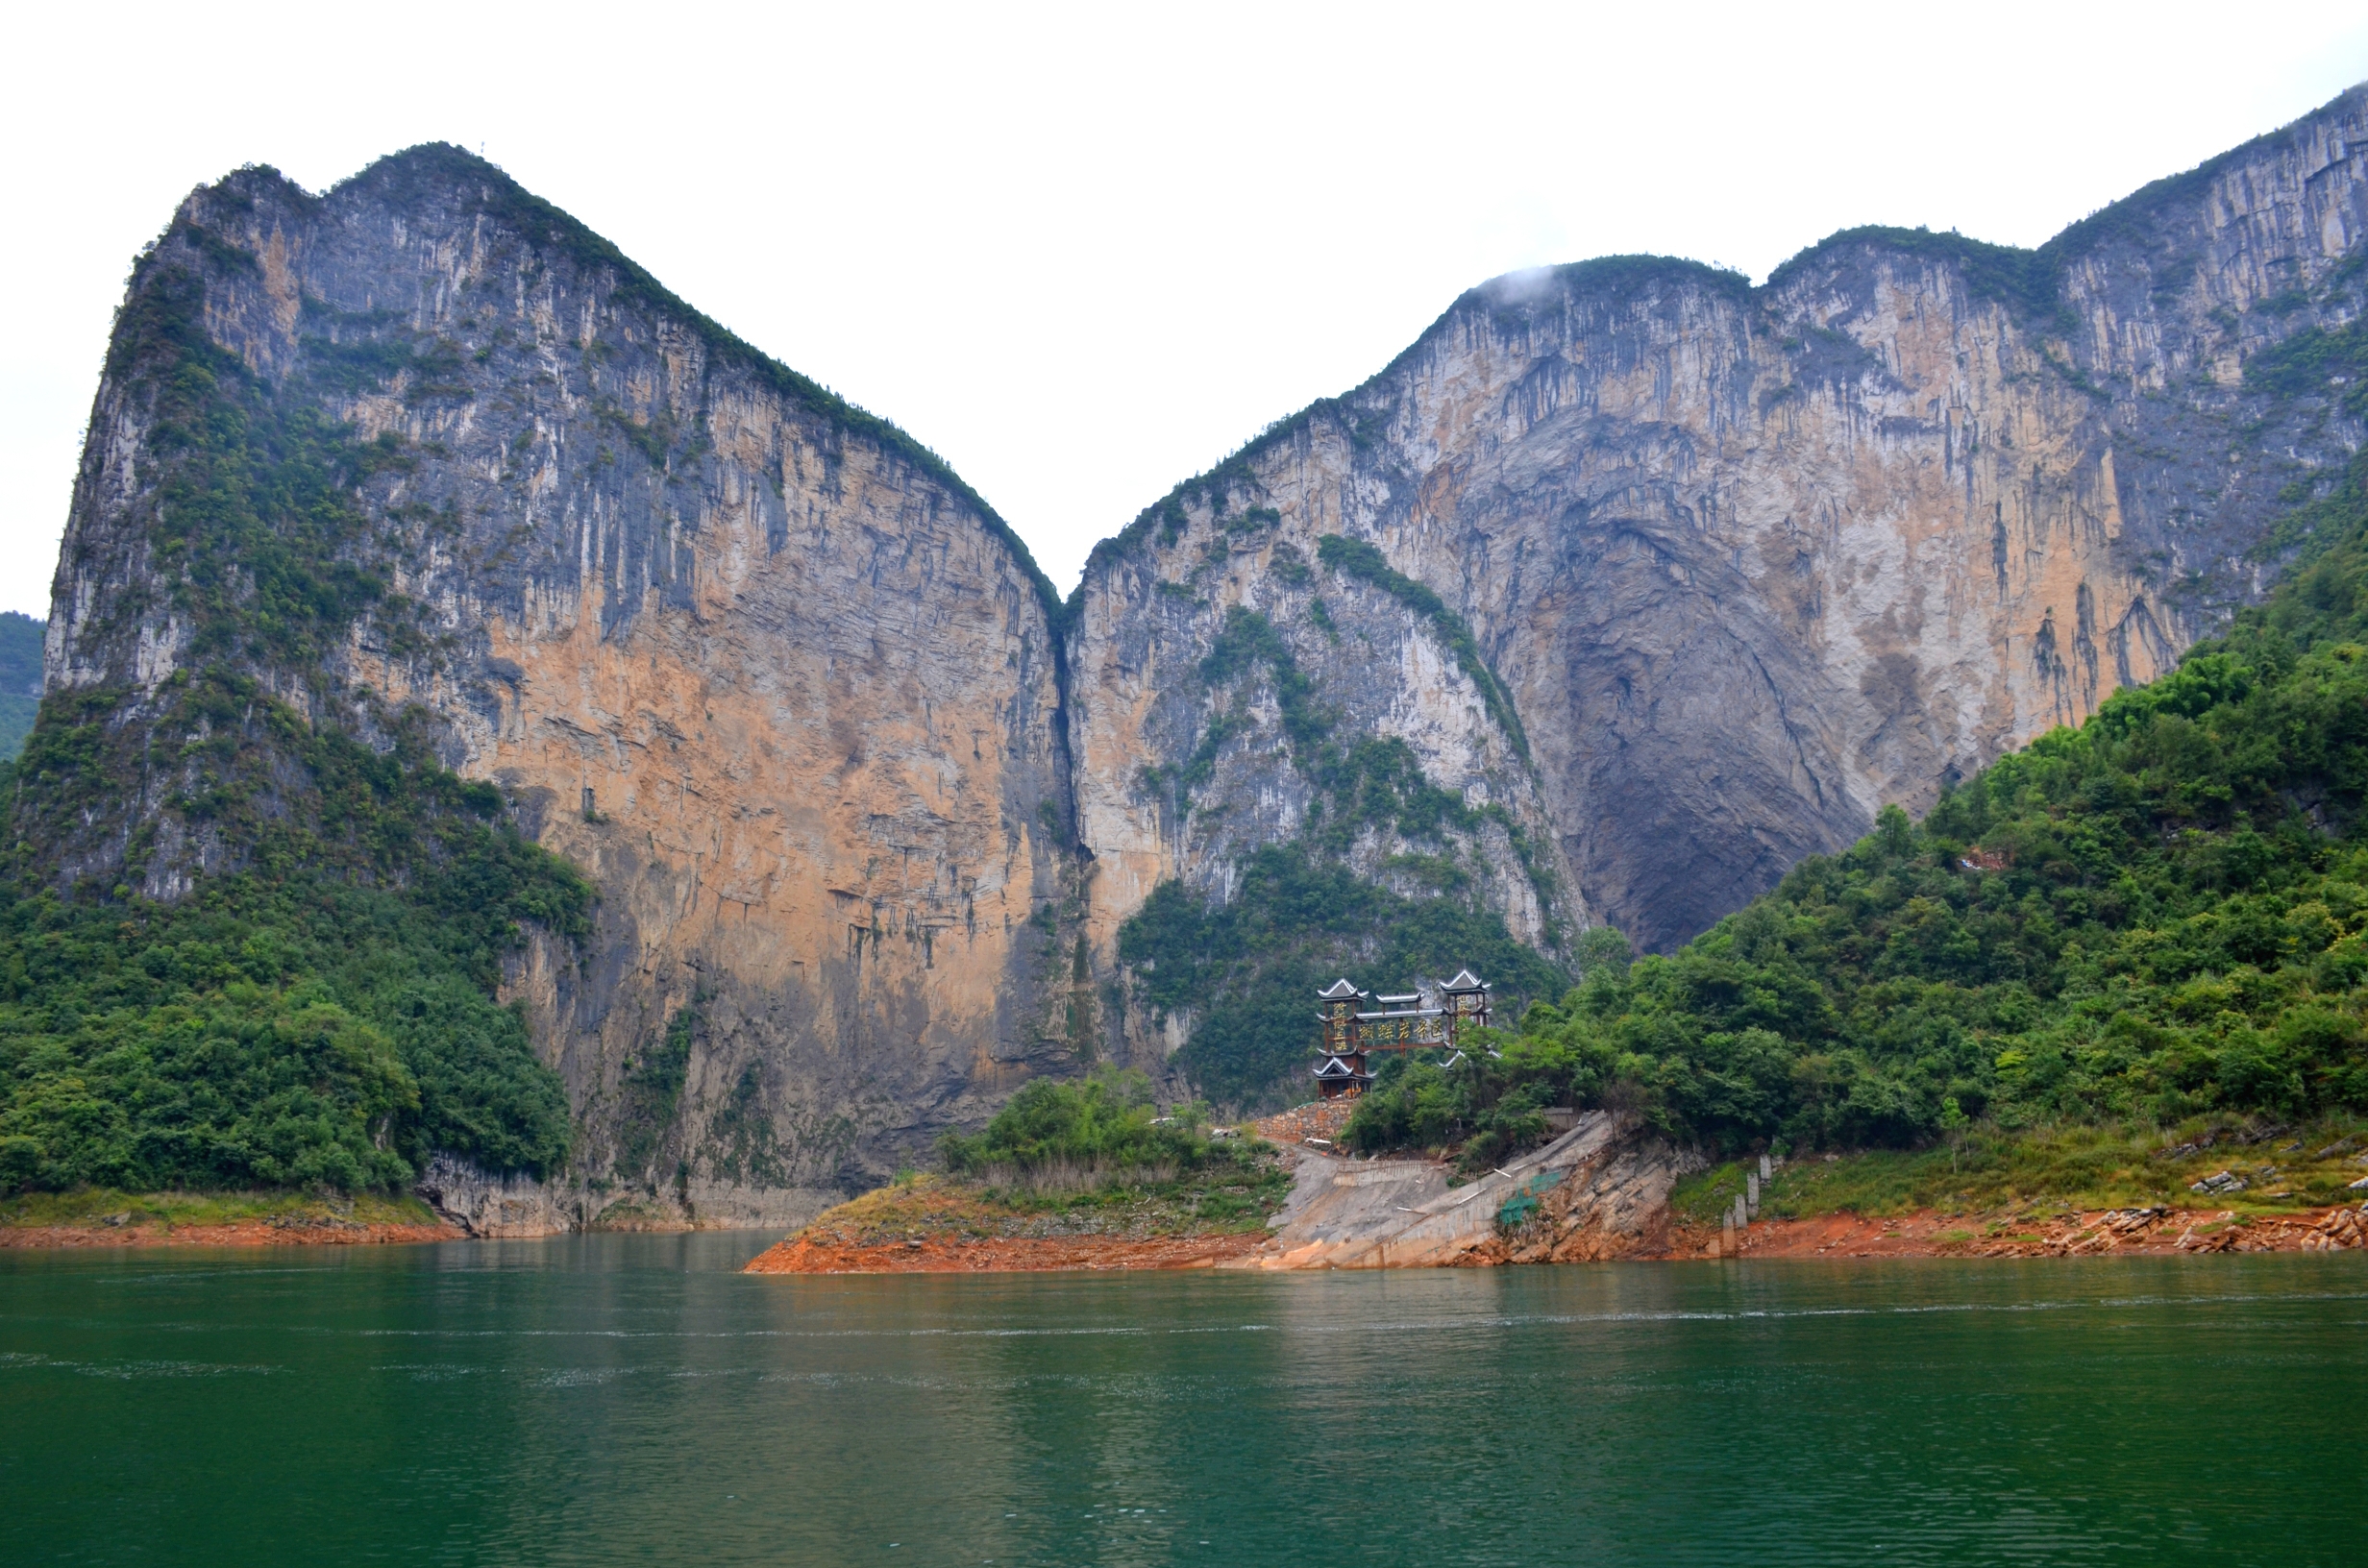 清江蝴蝶崖,是恩施大清江风景区的标志性景点,因山崖形似蝴蝶展翅而得